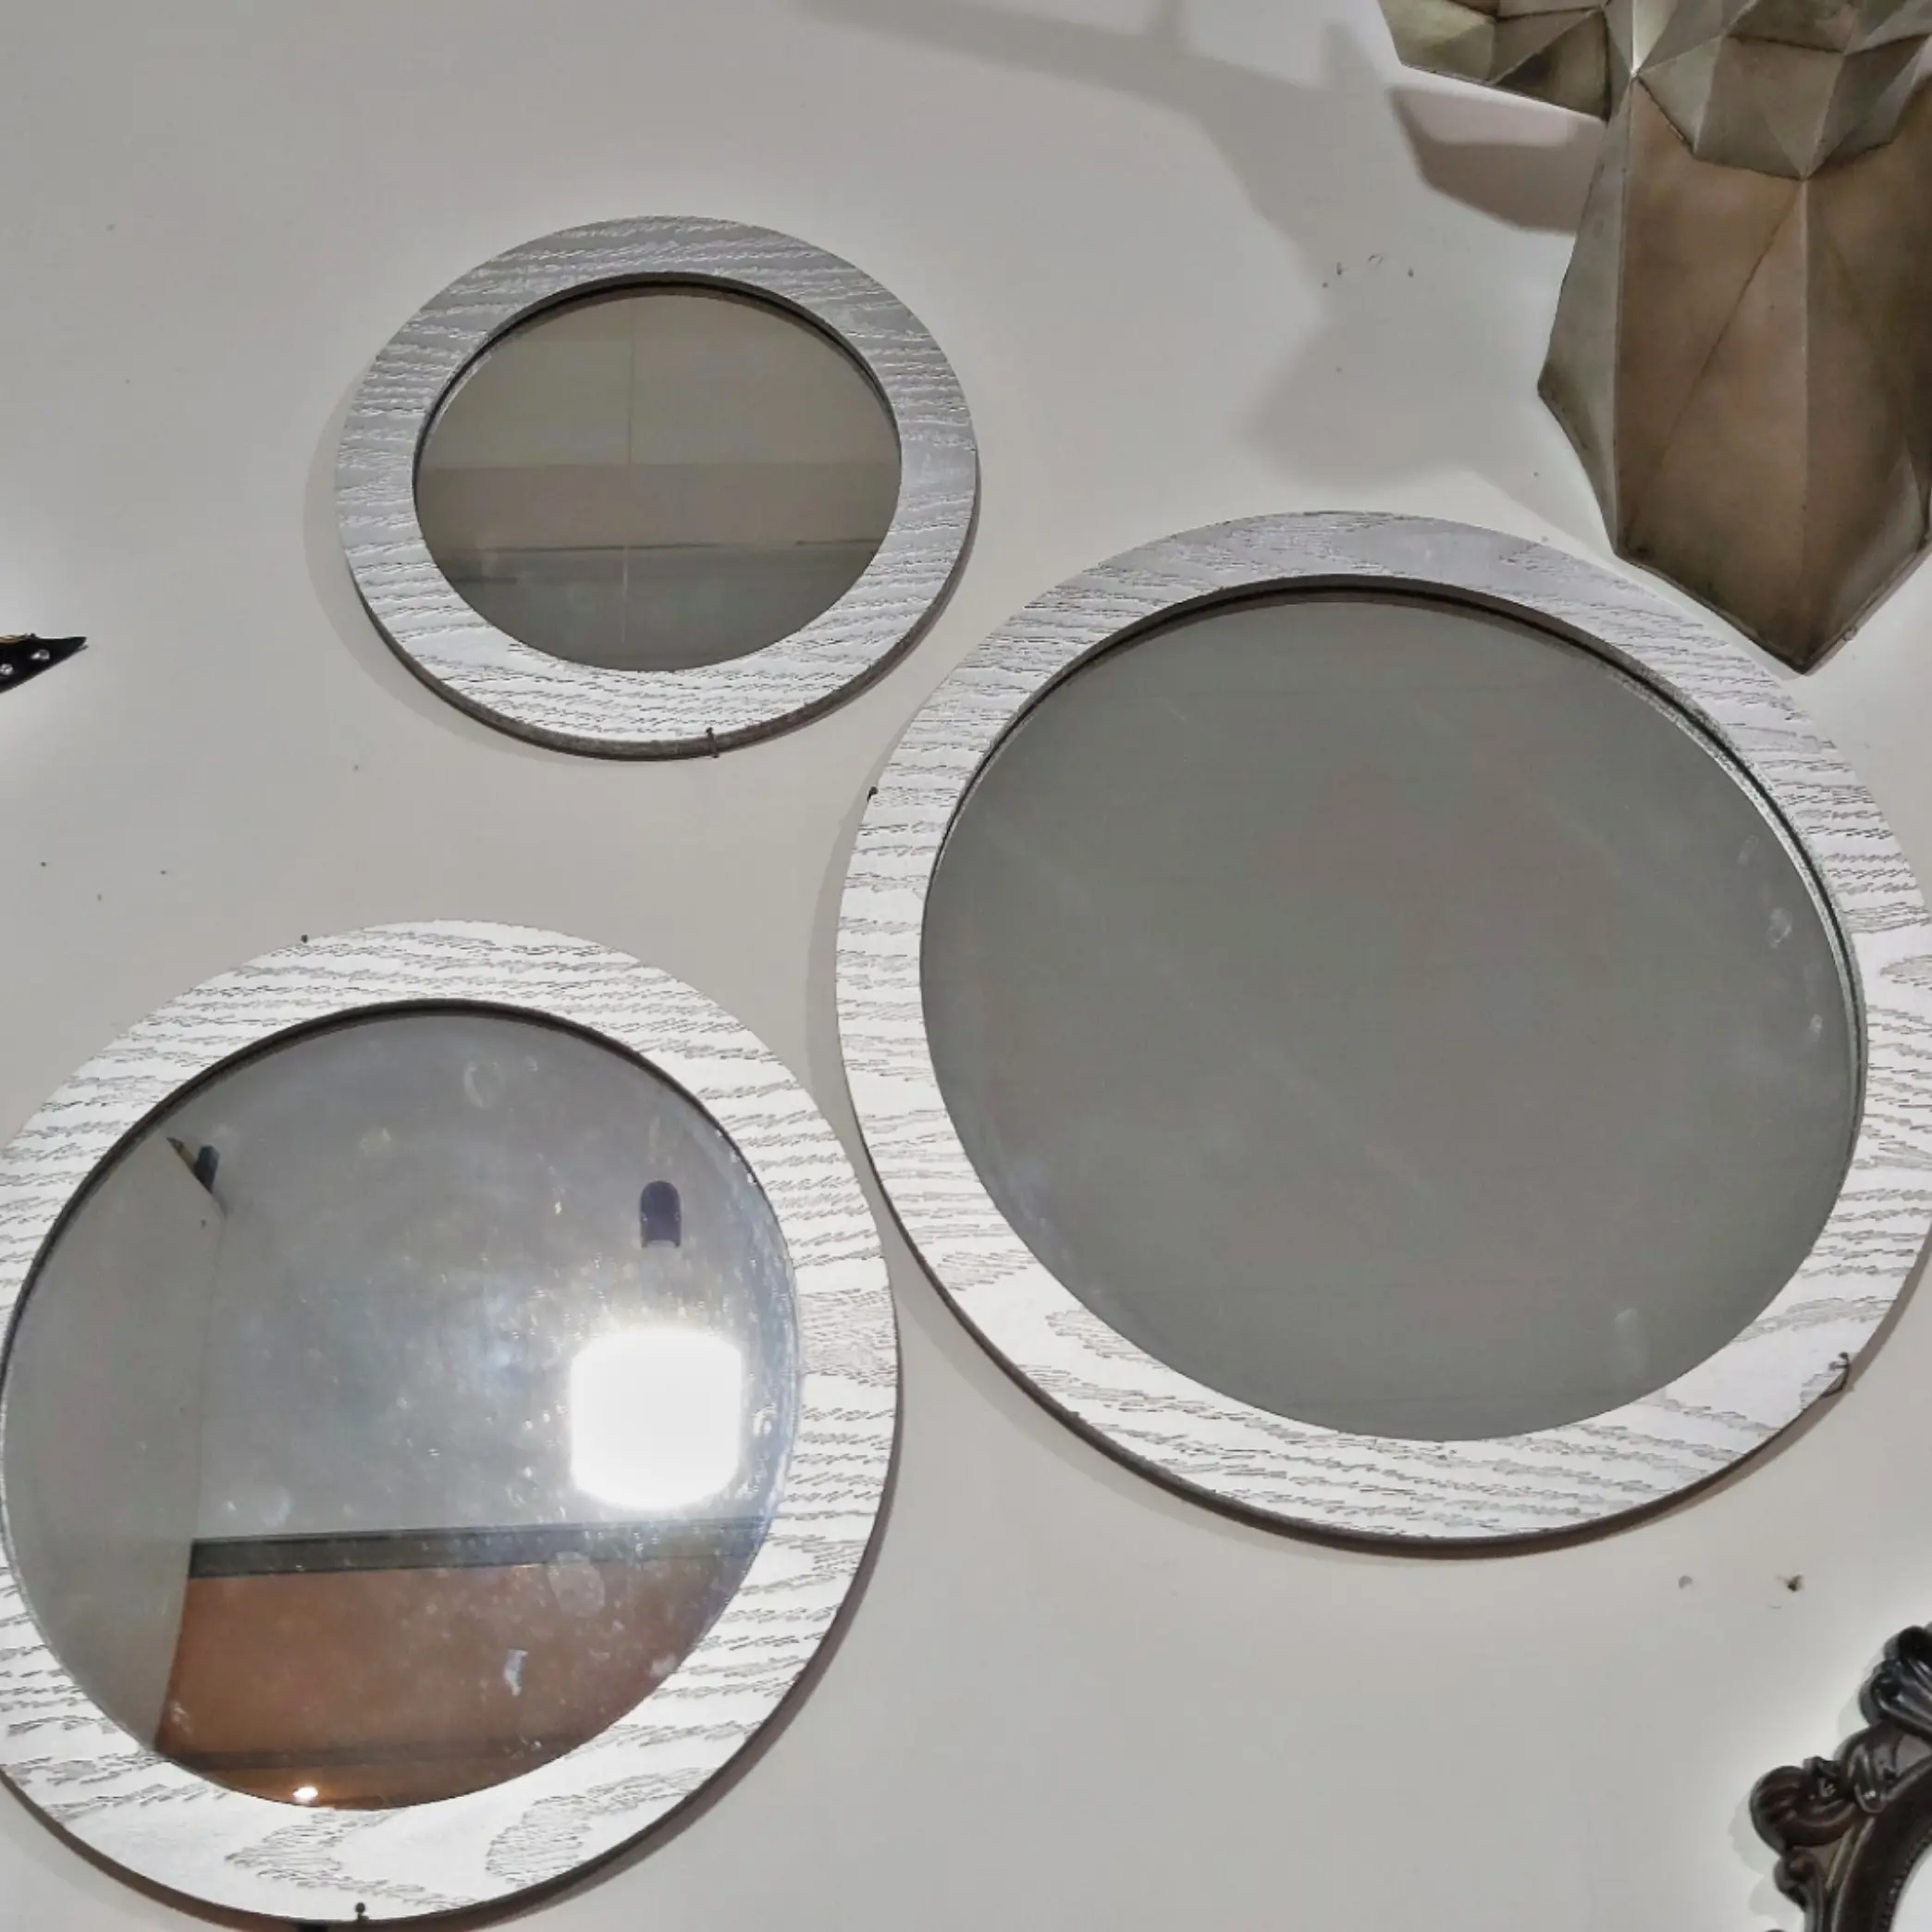 آینه 5 تیکه با هم در رنگ سفید،نقره ای،قهوه ای تیره